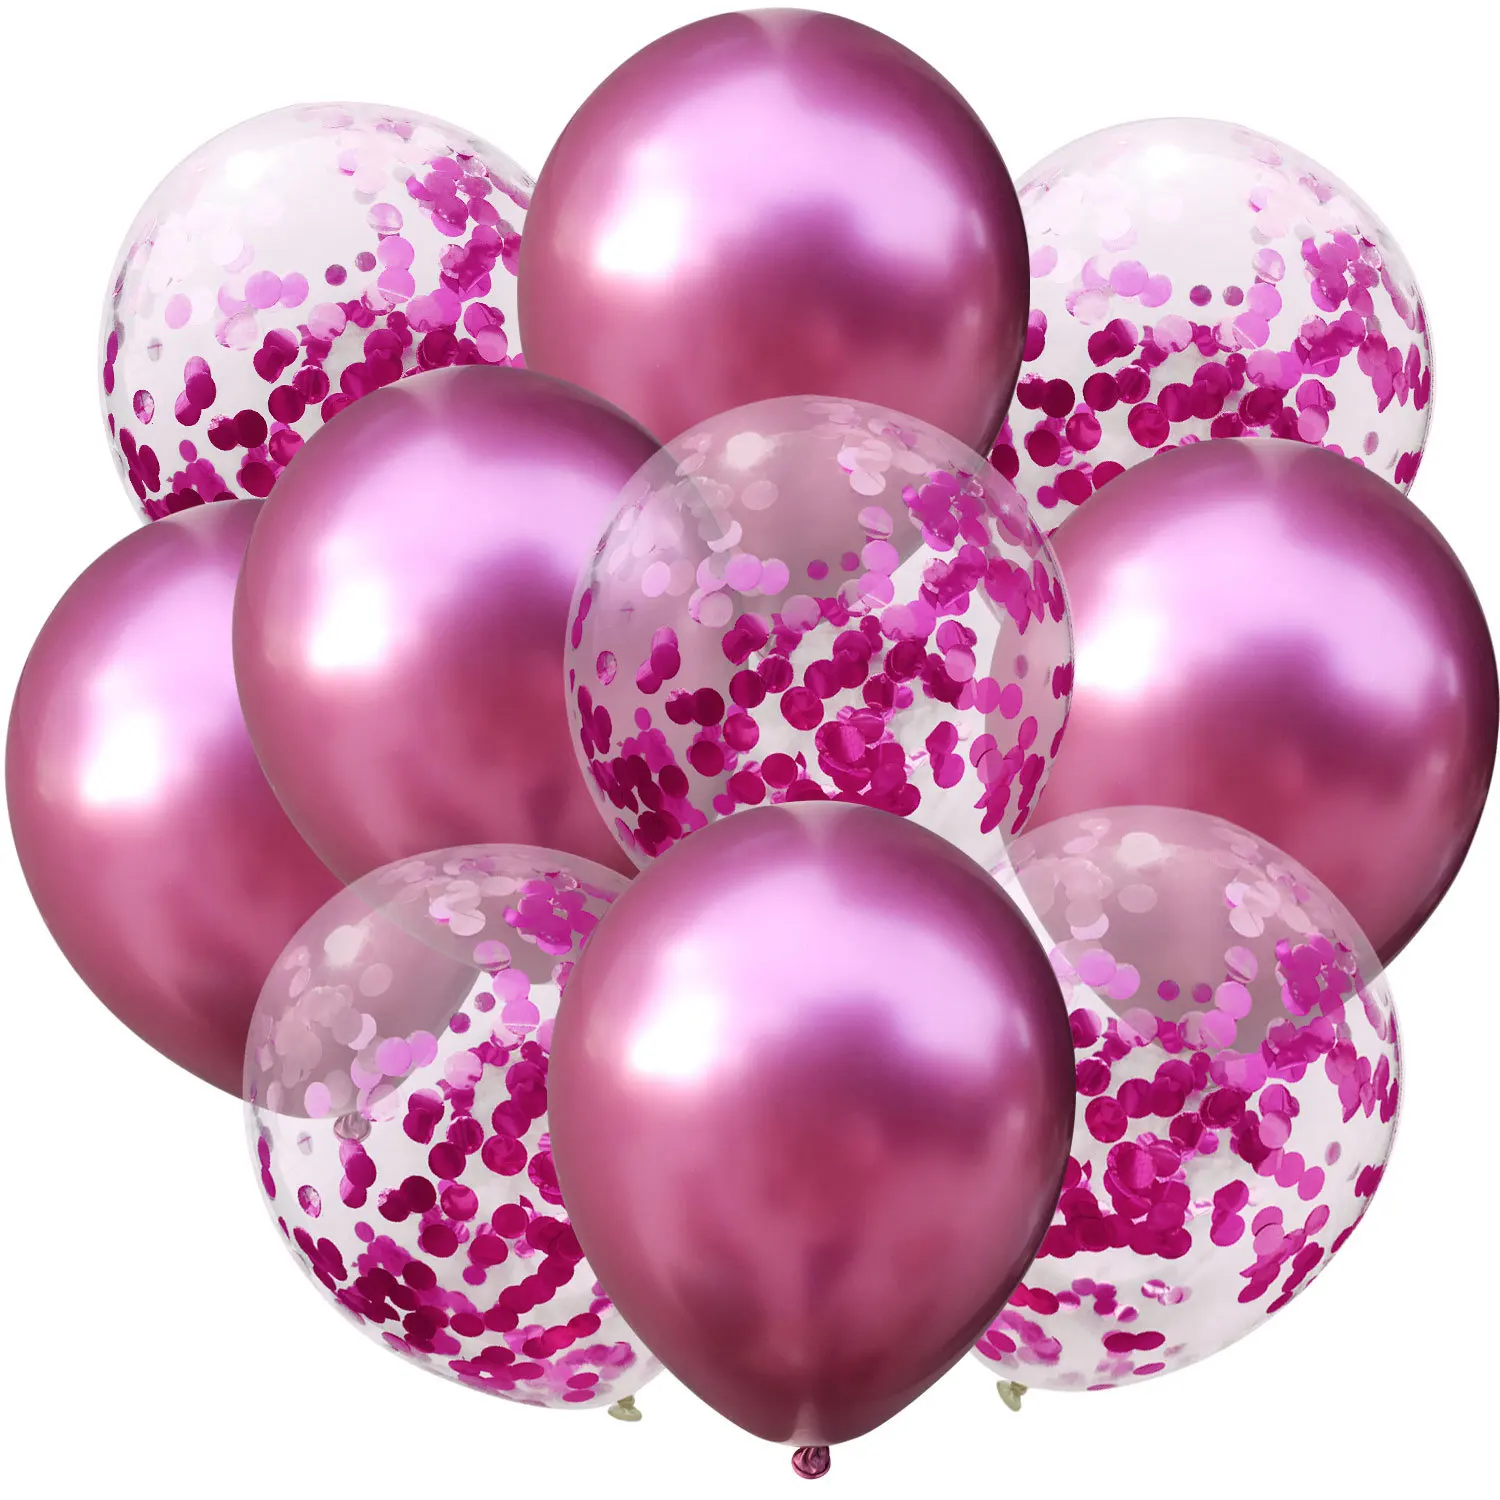 Amawill 10 шт смешанные шары с золотыми Конфетти День рождения украшение металлический хром воздушный шар на день рождения вечерние украшения 7D - Цвет: 3